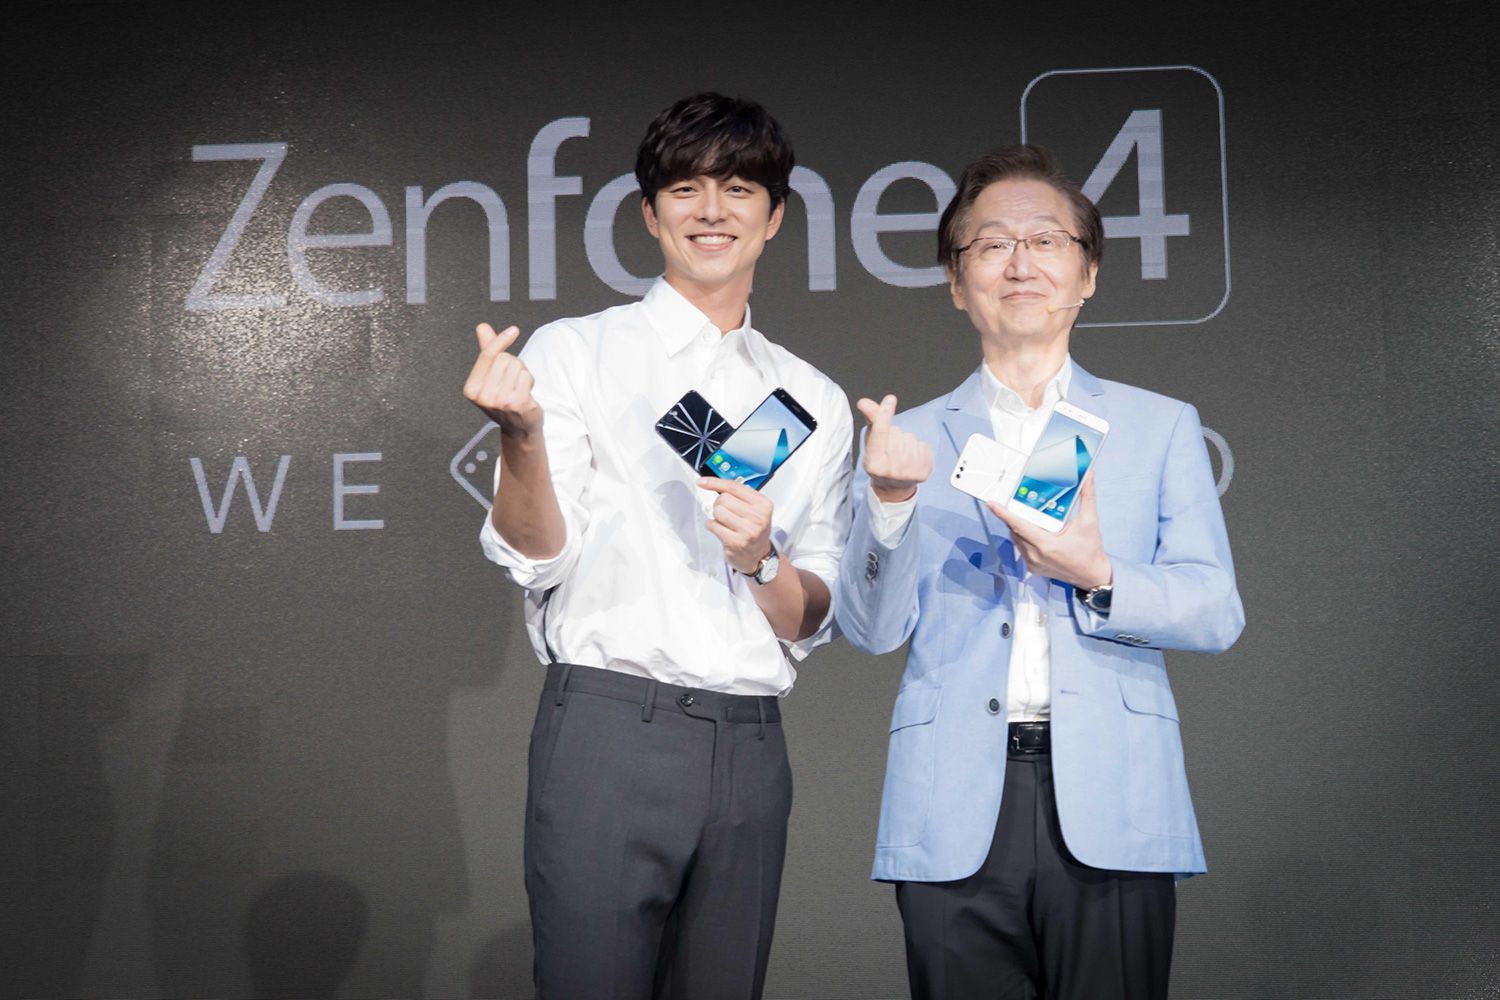 ASUS ZenFone 4 Series TPE Launch_1